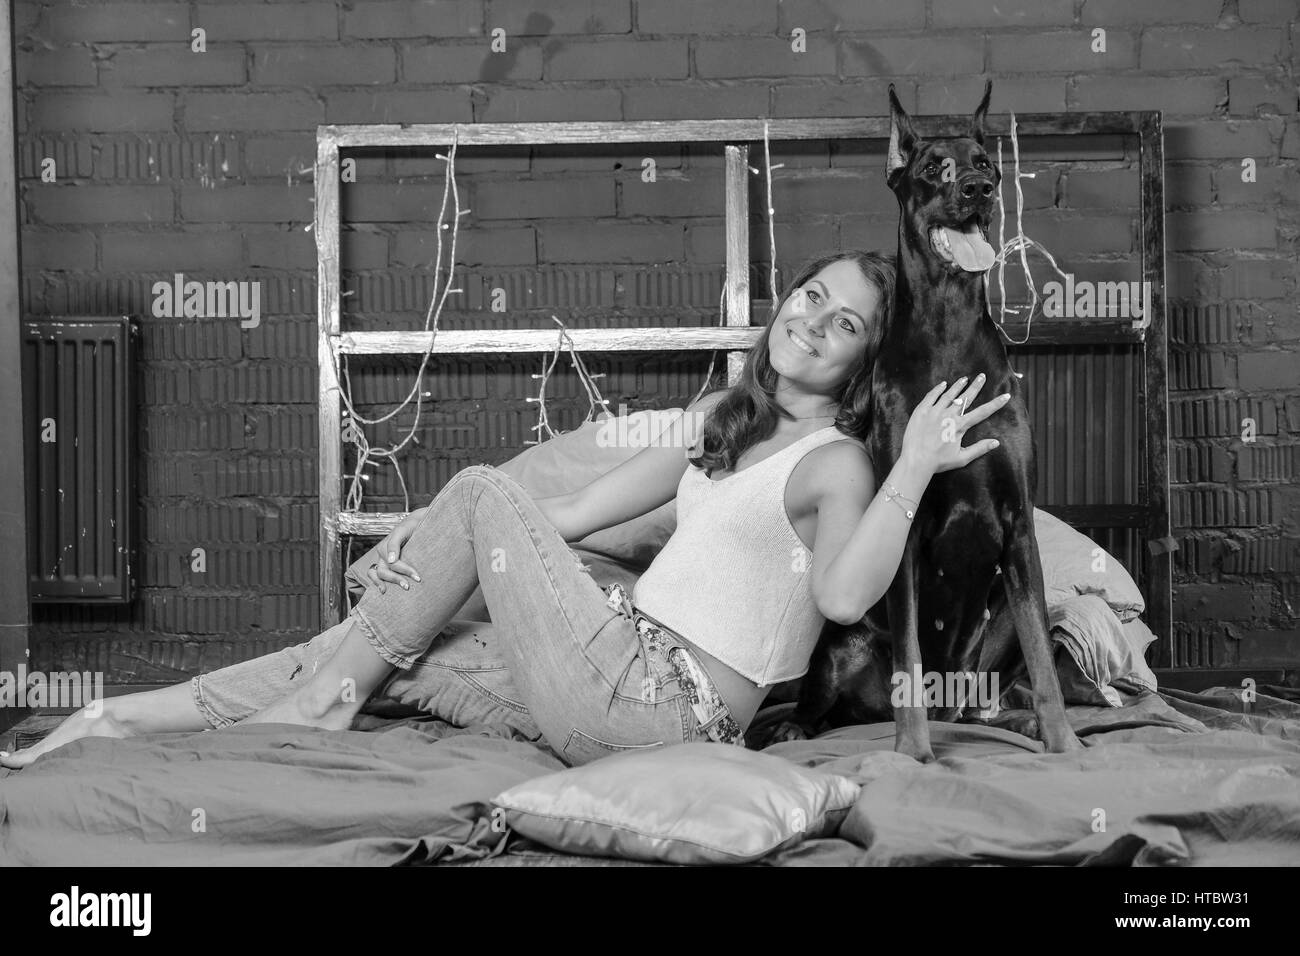 Frau im Bett mit großen schwarzen Dobermann Hund Stockfoto